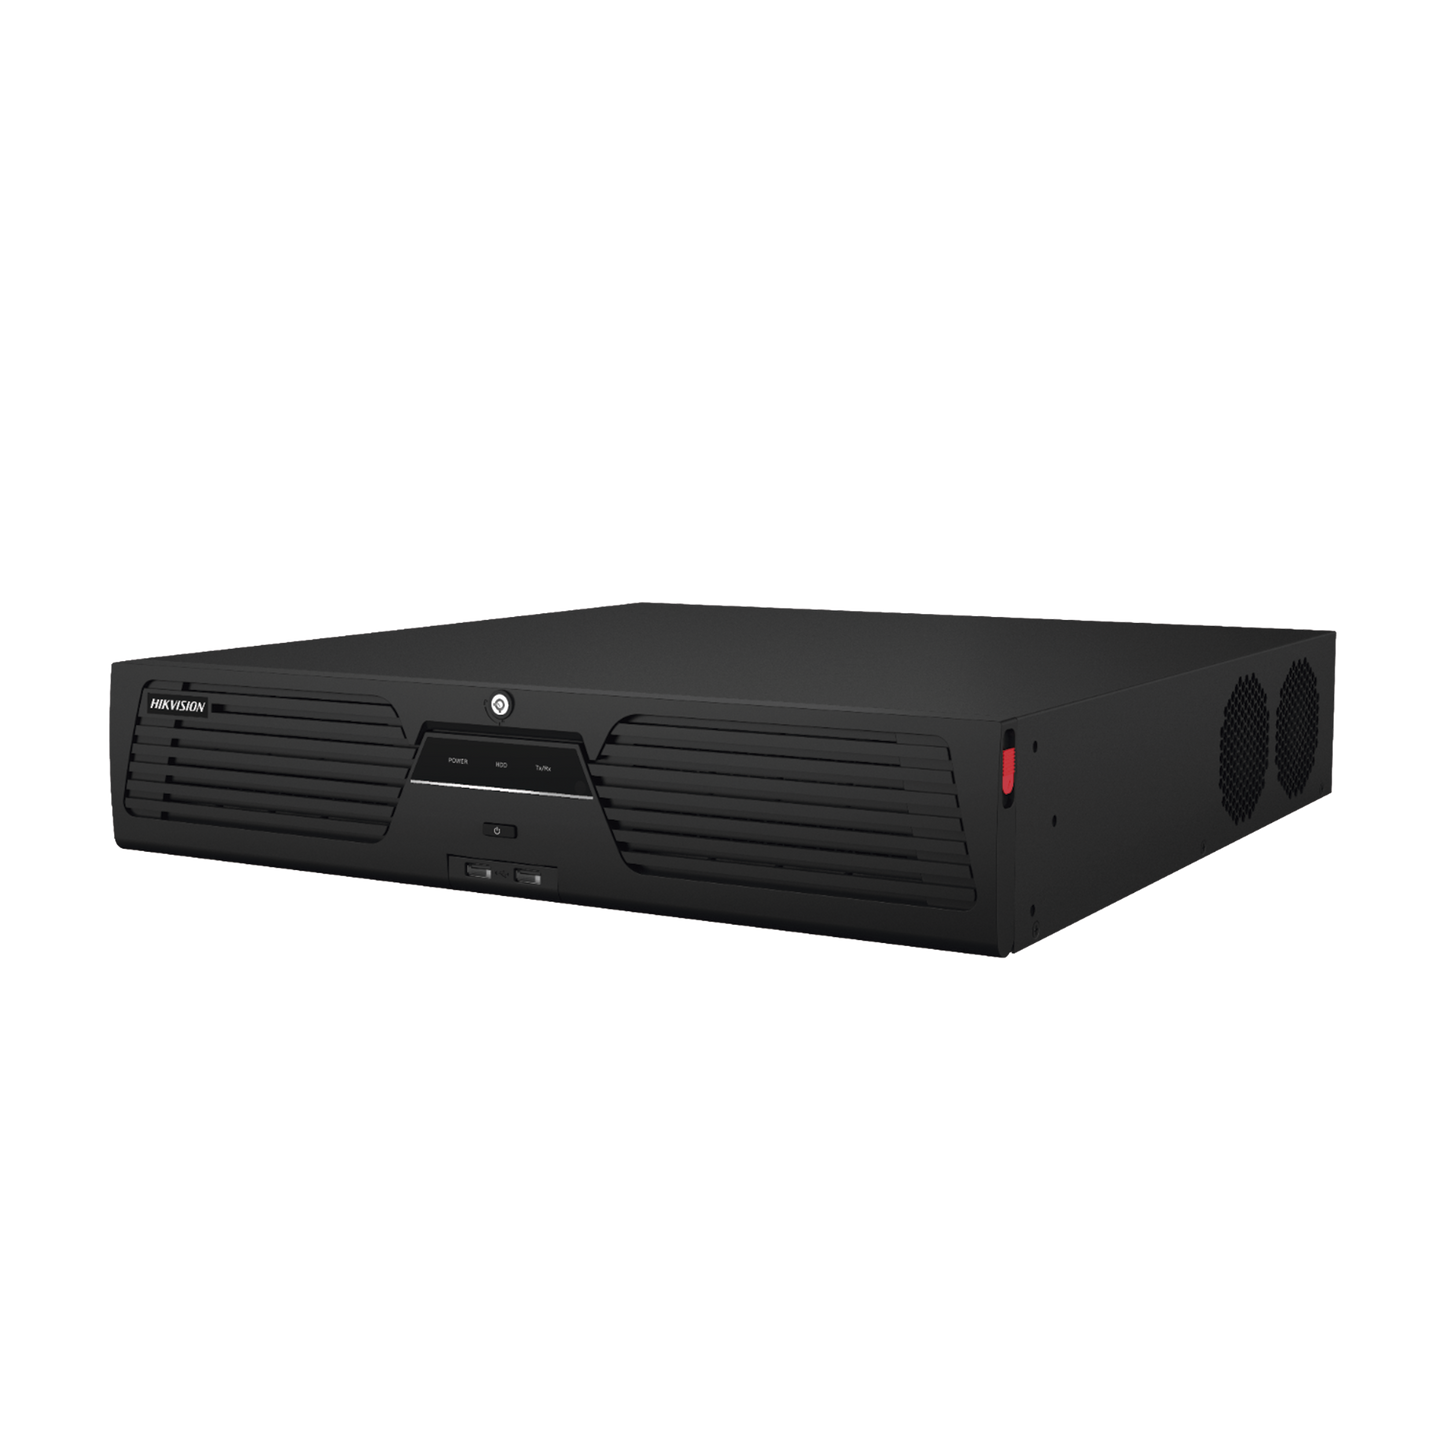 [Doble Poder de Decodificación] NVR 32 Megapixel (8K) / 64 Canales IP / AcuSense / ANPR / Conteo de Personas / Heat Map / 8 Bahías de Disco Duro / 2 Tarjetas de Red / Soporta RAID con Hot Swap / 2 HDMI en 8K / Soporta POS / Alarmas I/O / ACU